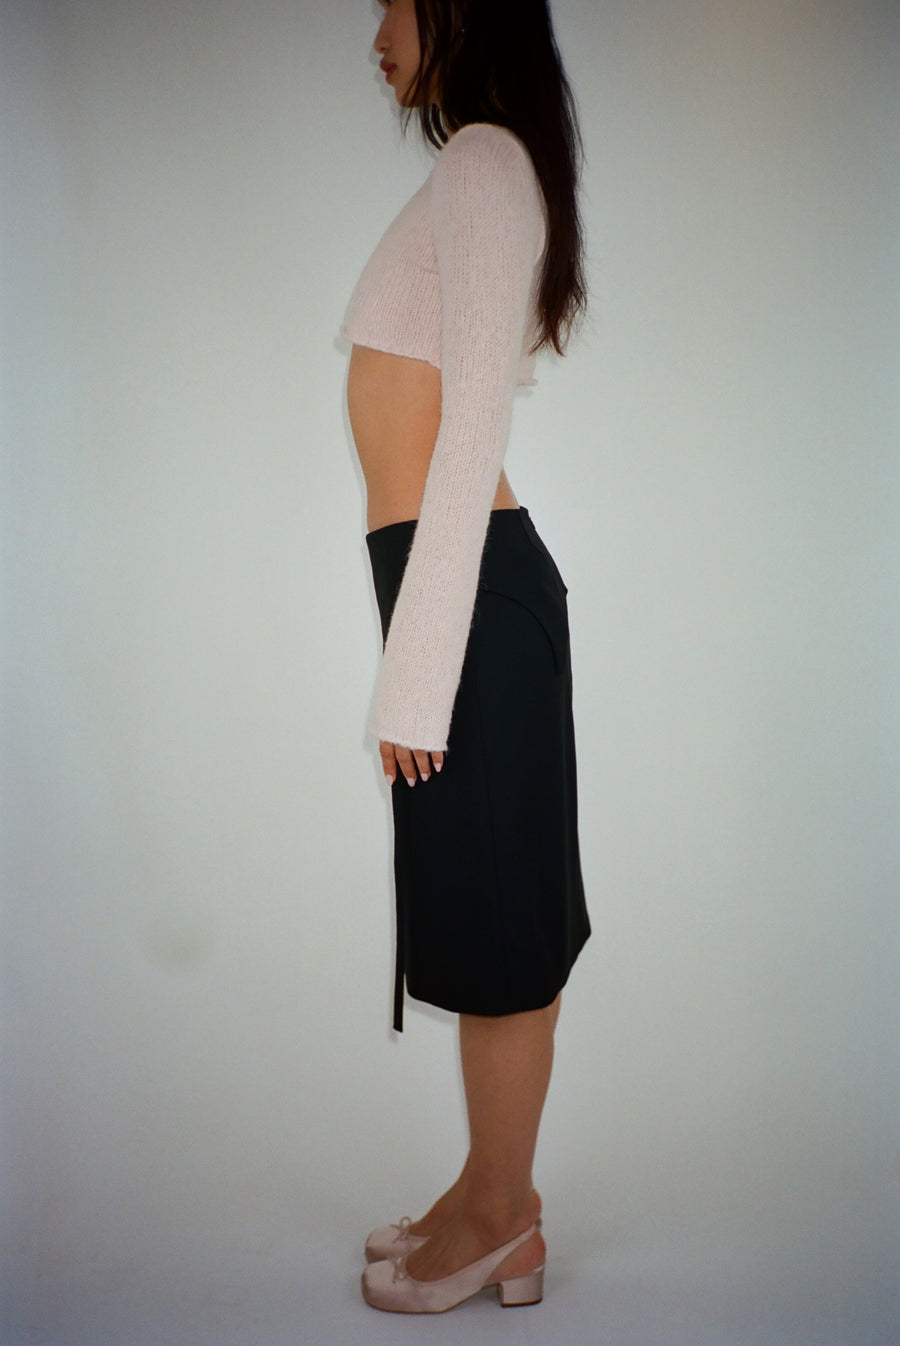 Knee length skirt in black with garter strap detail on model